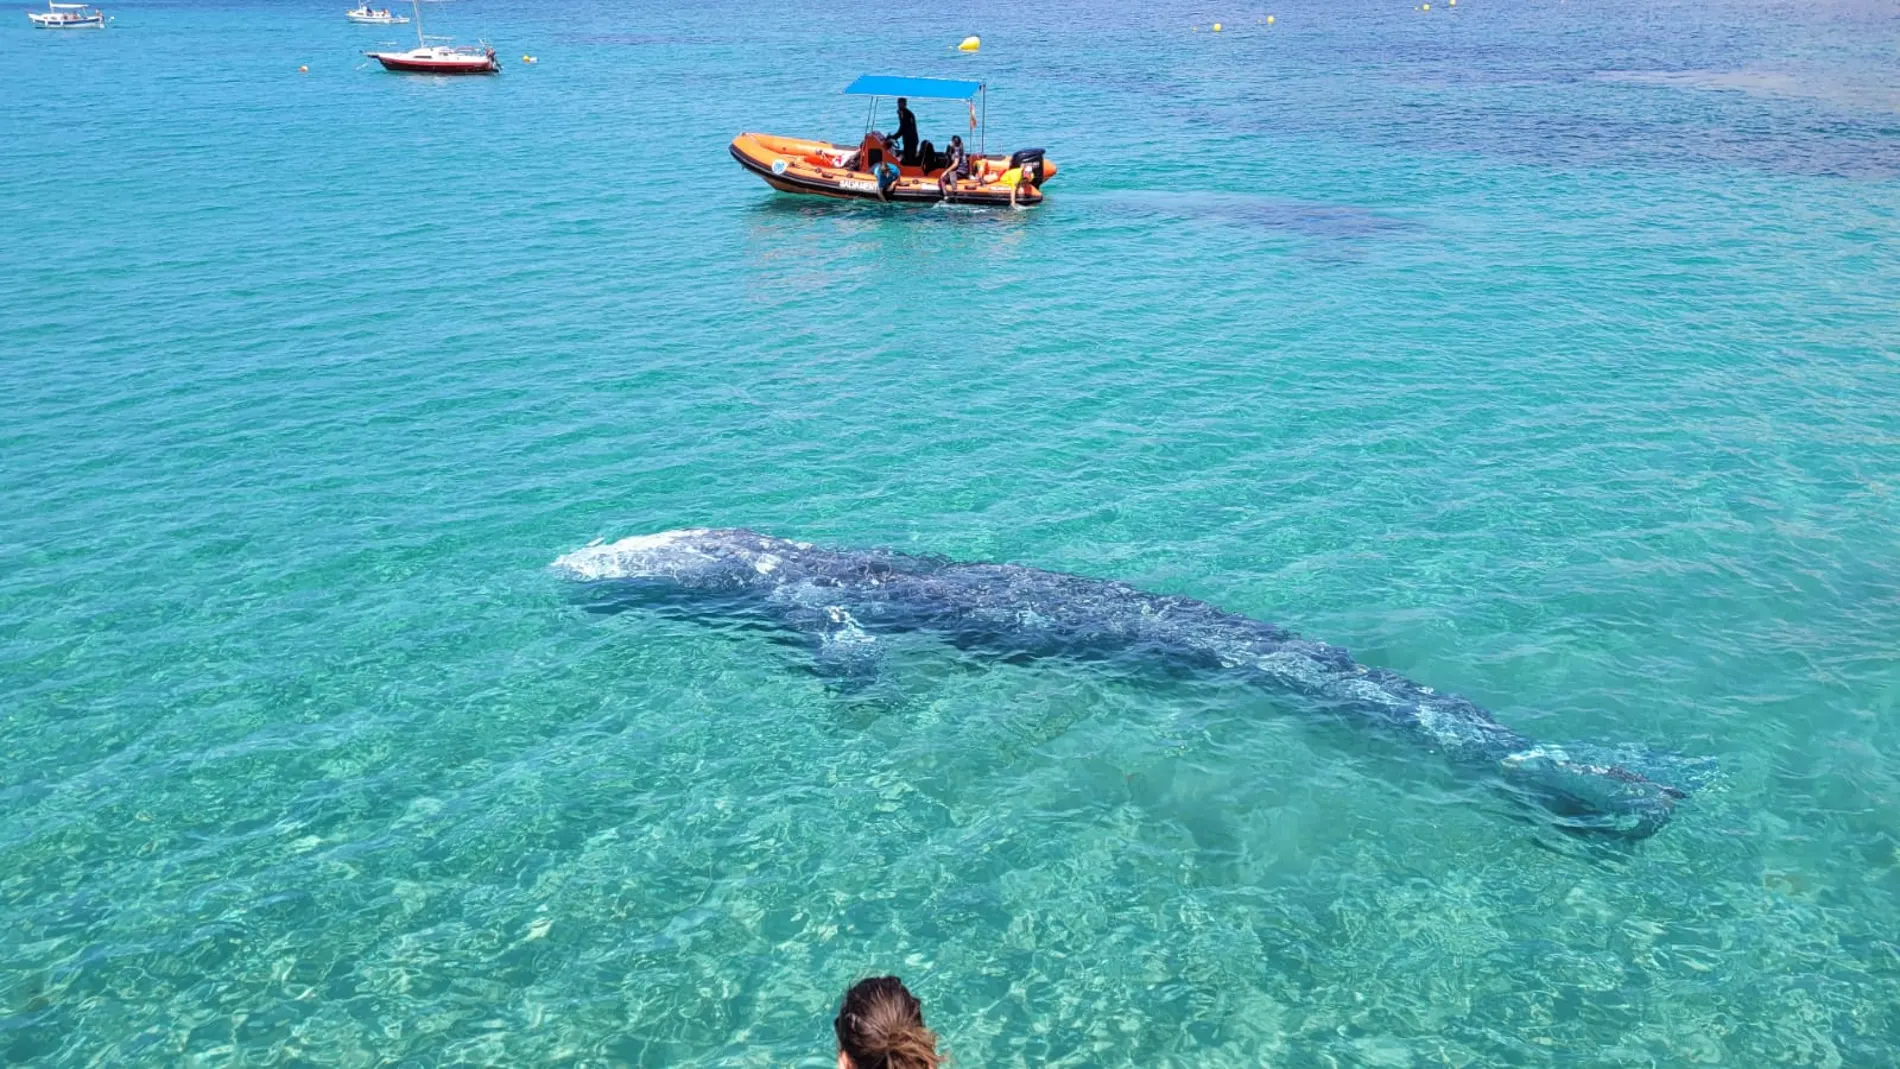 Avistamiento de la ballena gris apodada 'Wally' en Mallorca